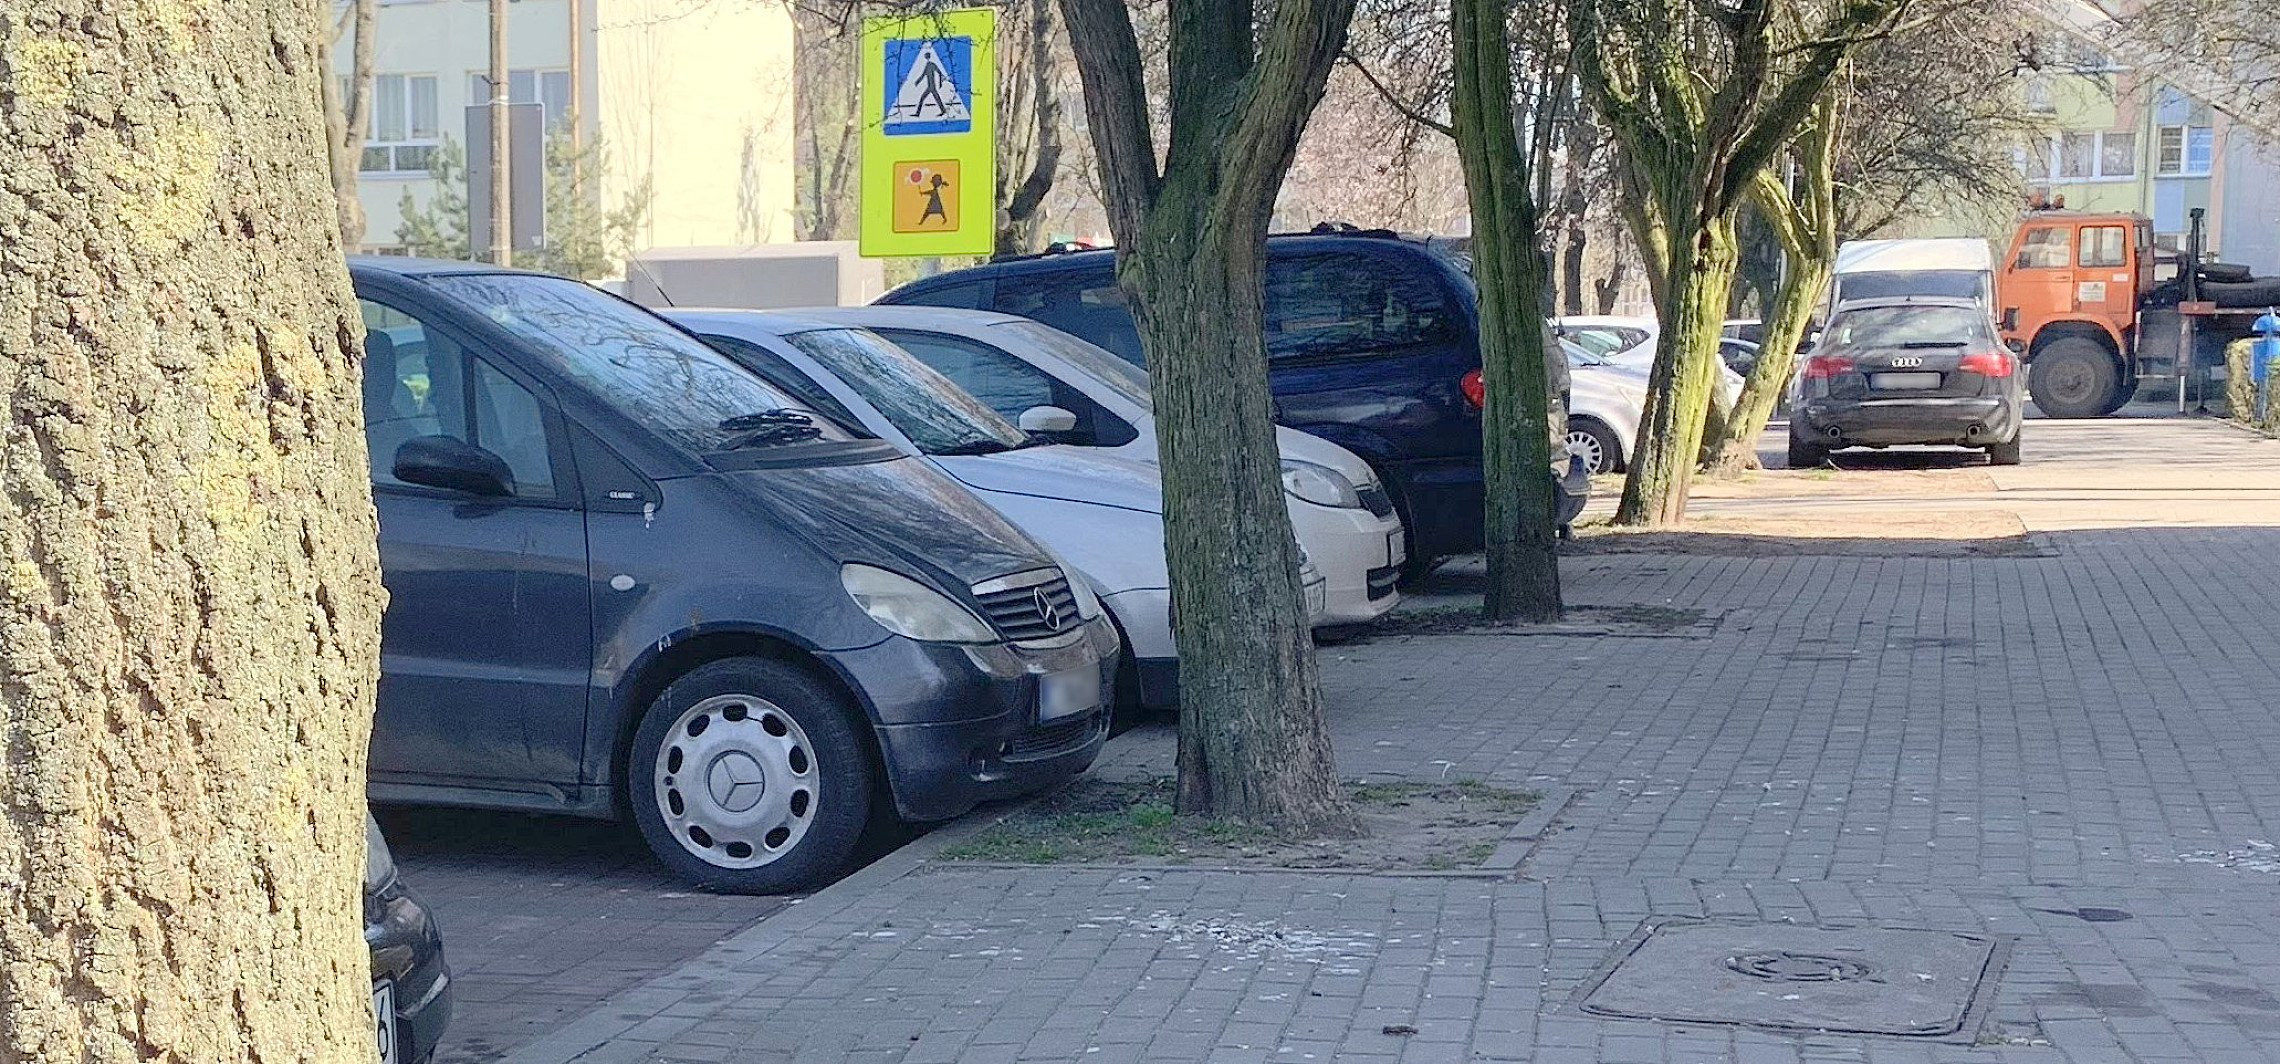 Inowrocław - Parkując, zahaczają o drzewa. Do wycinki?